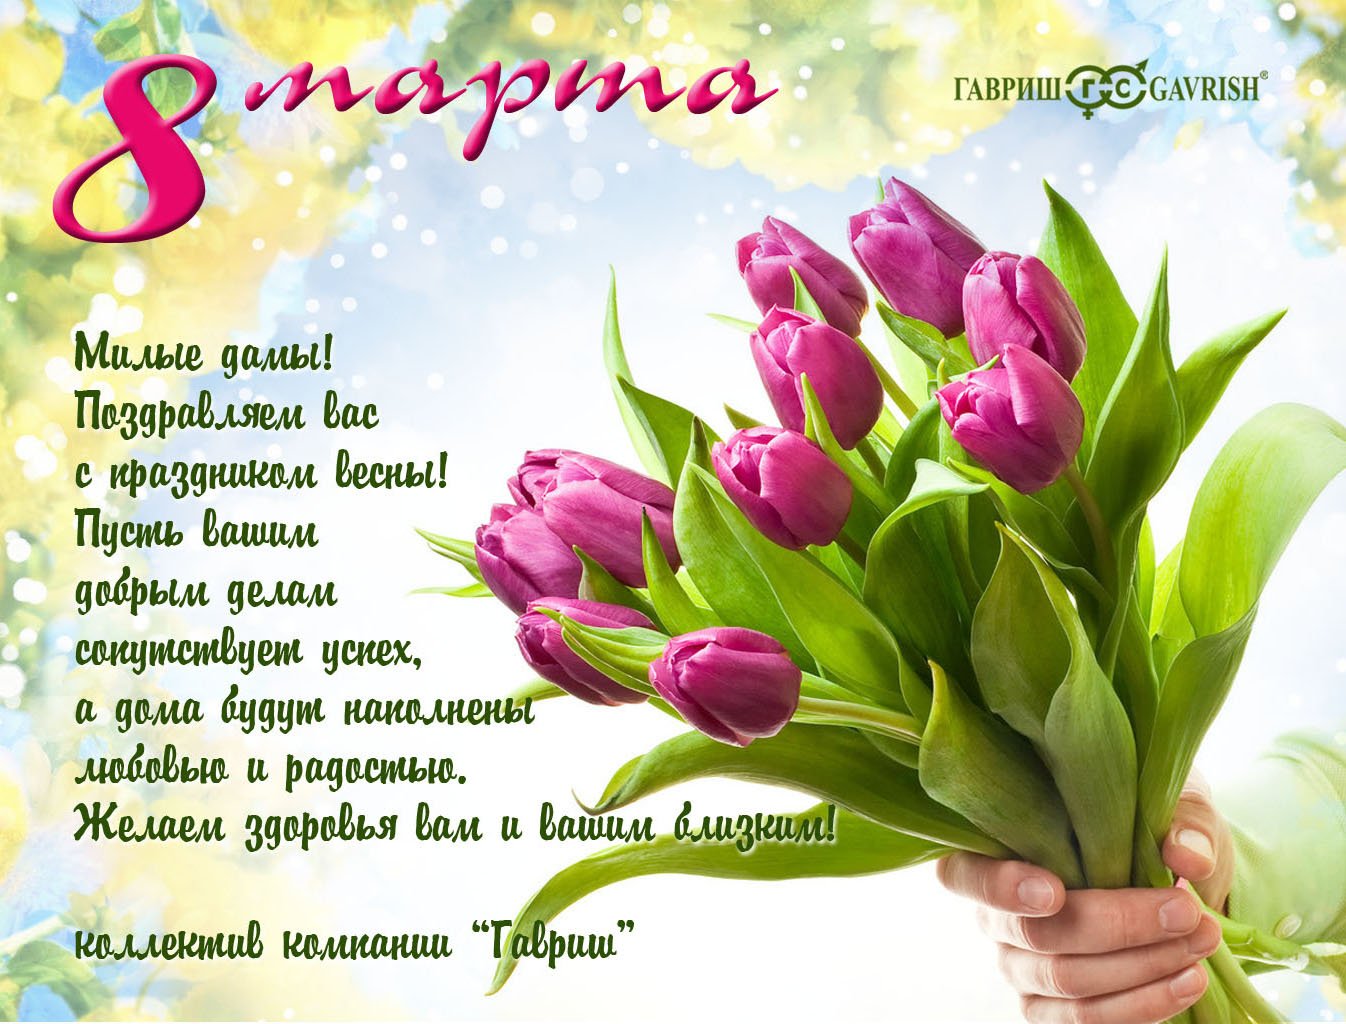 3 月 8 日为可爱的女士们准备的美丽郁金香花束